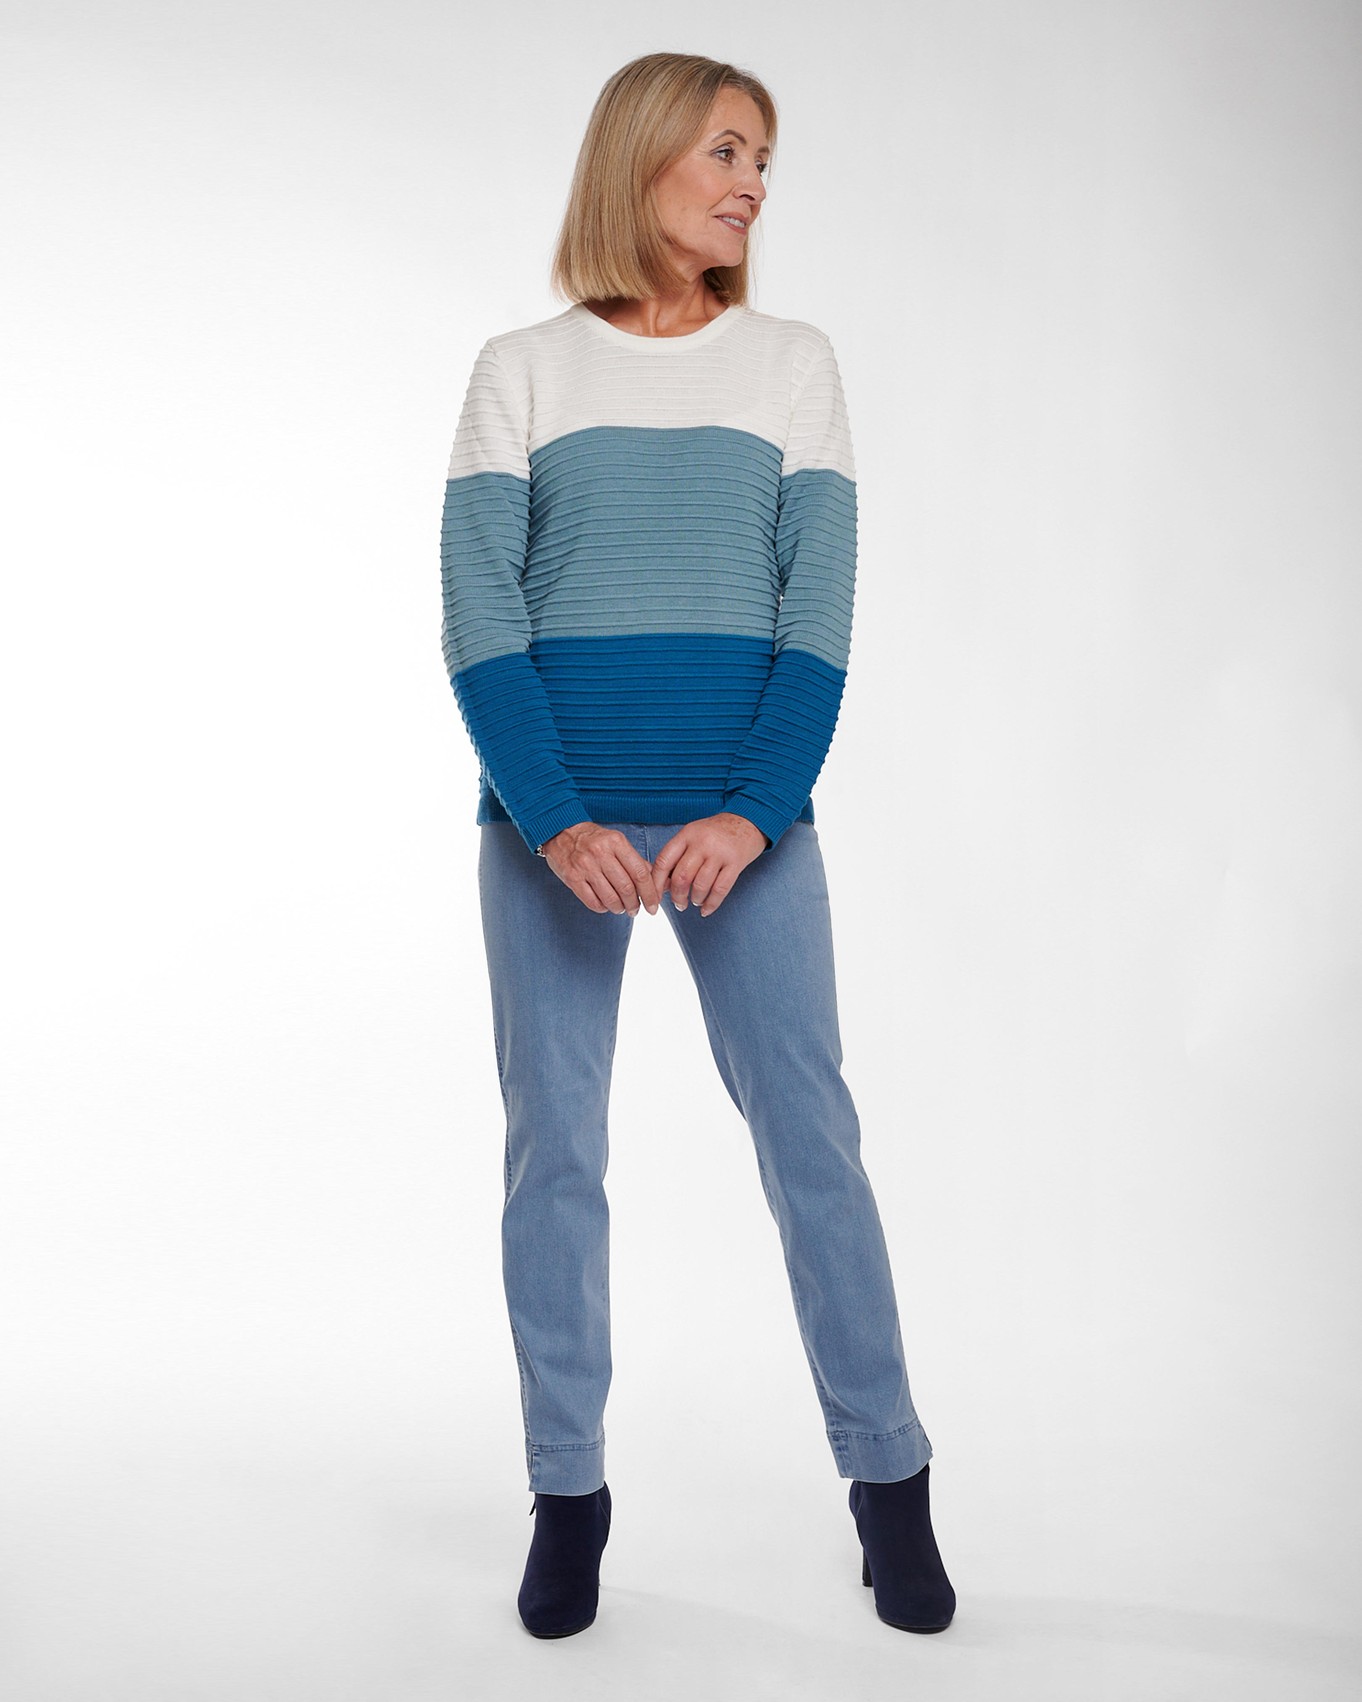 Blue Stripe Knit Jumper and Light Denim Jeans